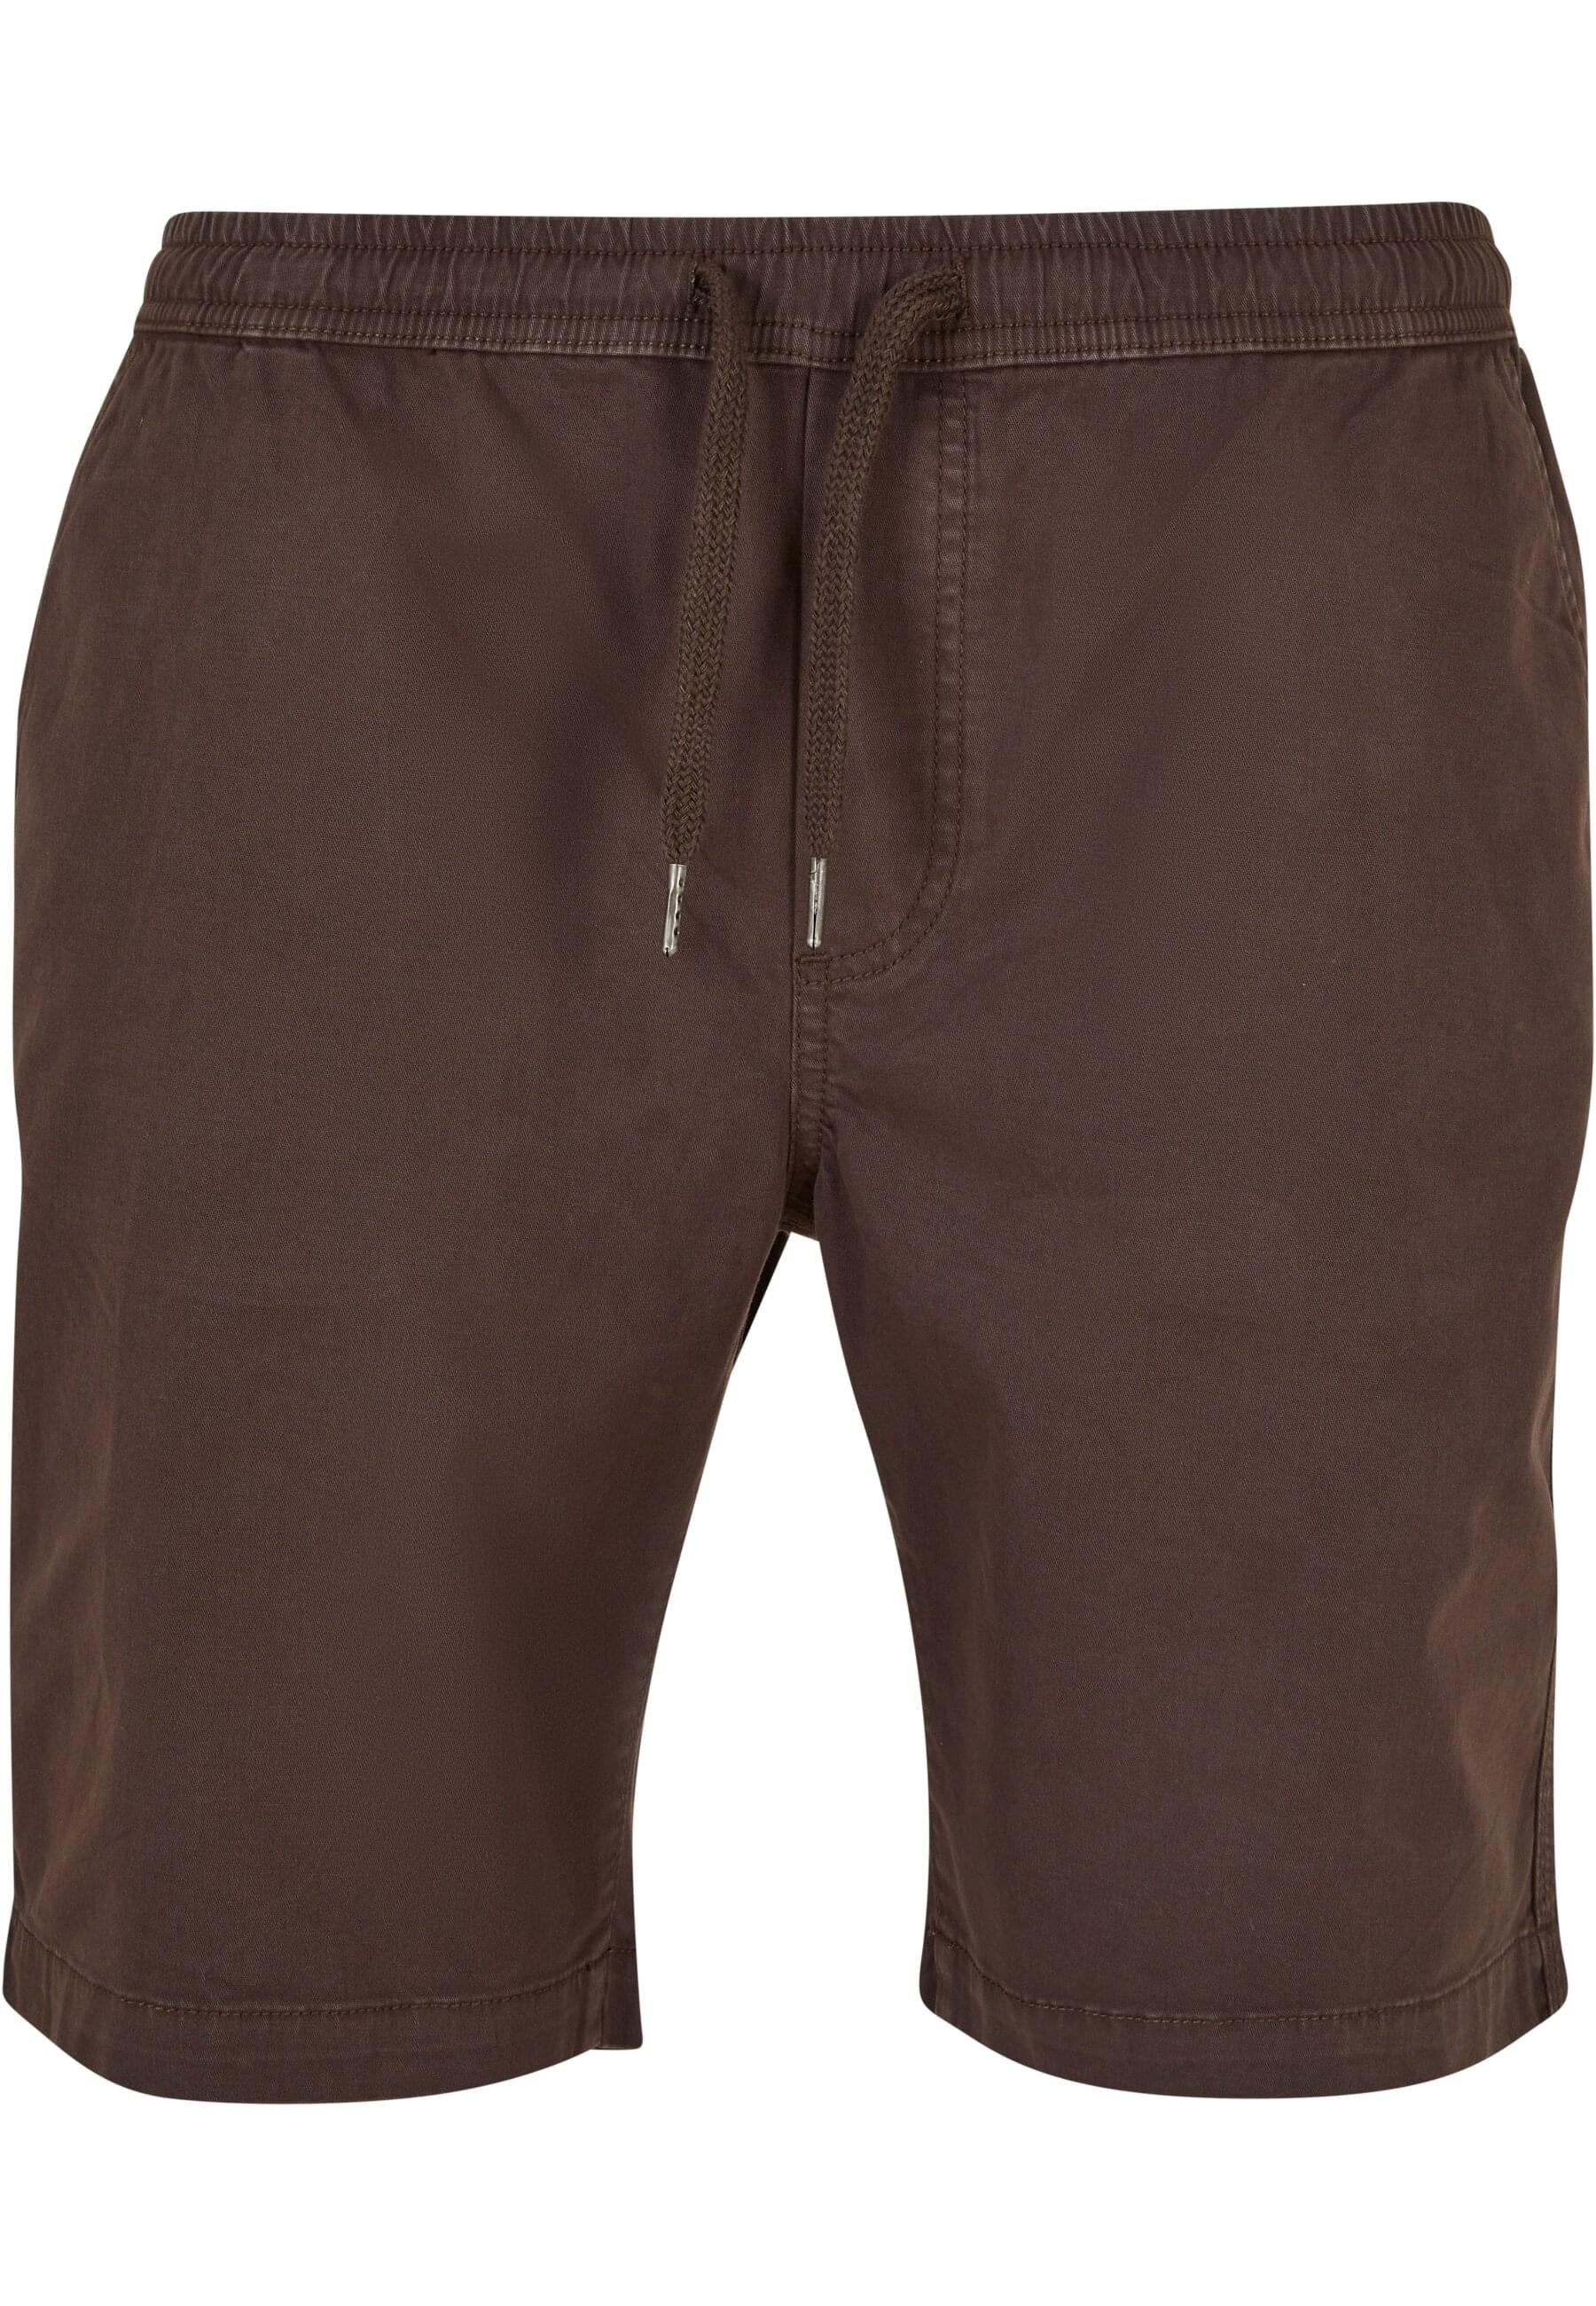 Спортивные брюки Urban Classics Sweat Shorts, коричневый